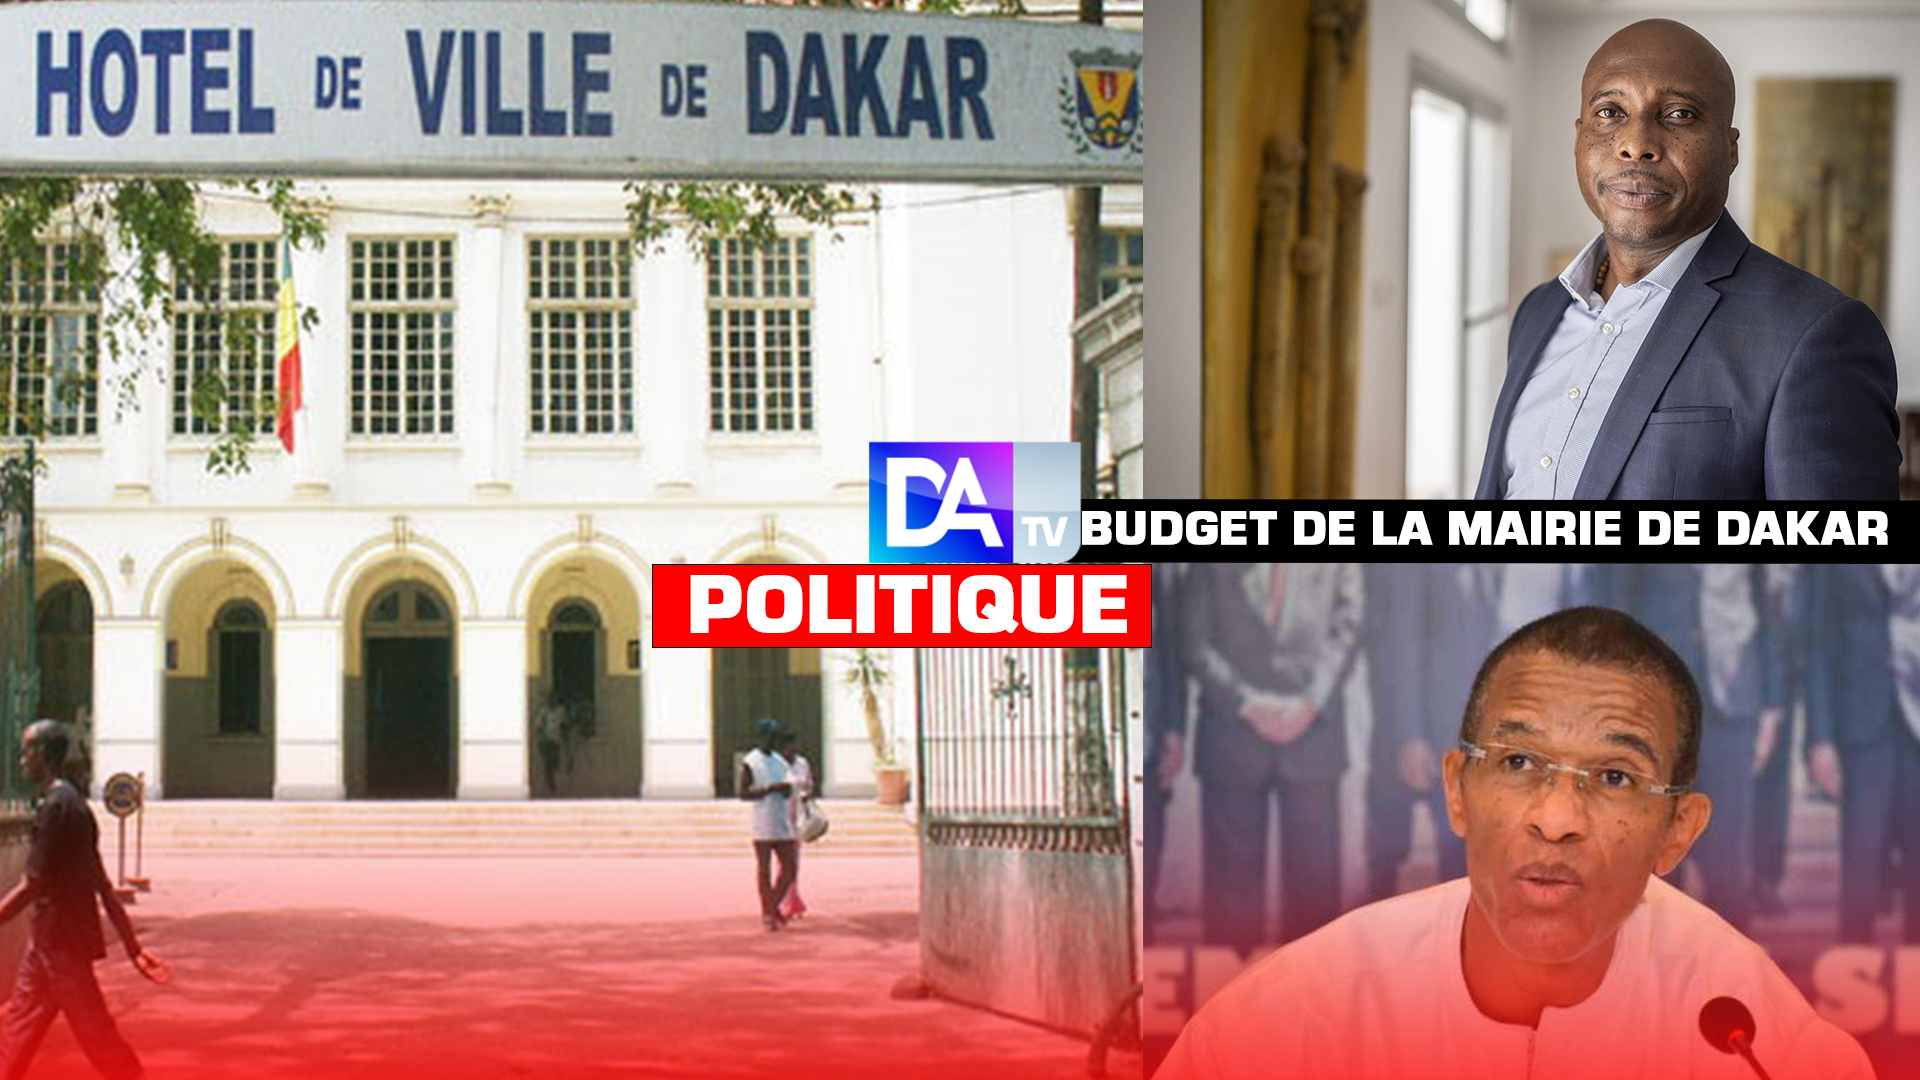 Budget de la Mairie de Dakar : Alioune Ndoye émet des réserves et parle de « gabegie pour le seul confort du maire et de sa clientèle proche »